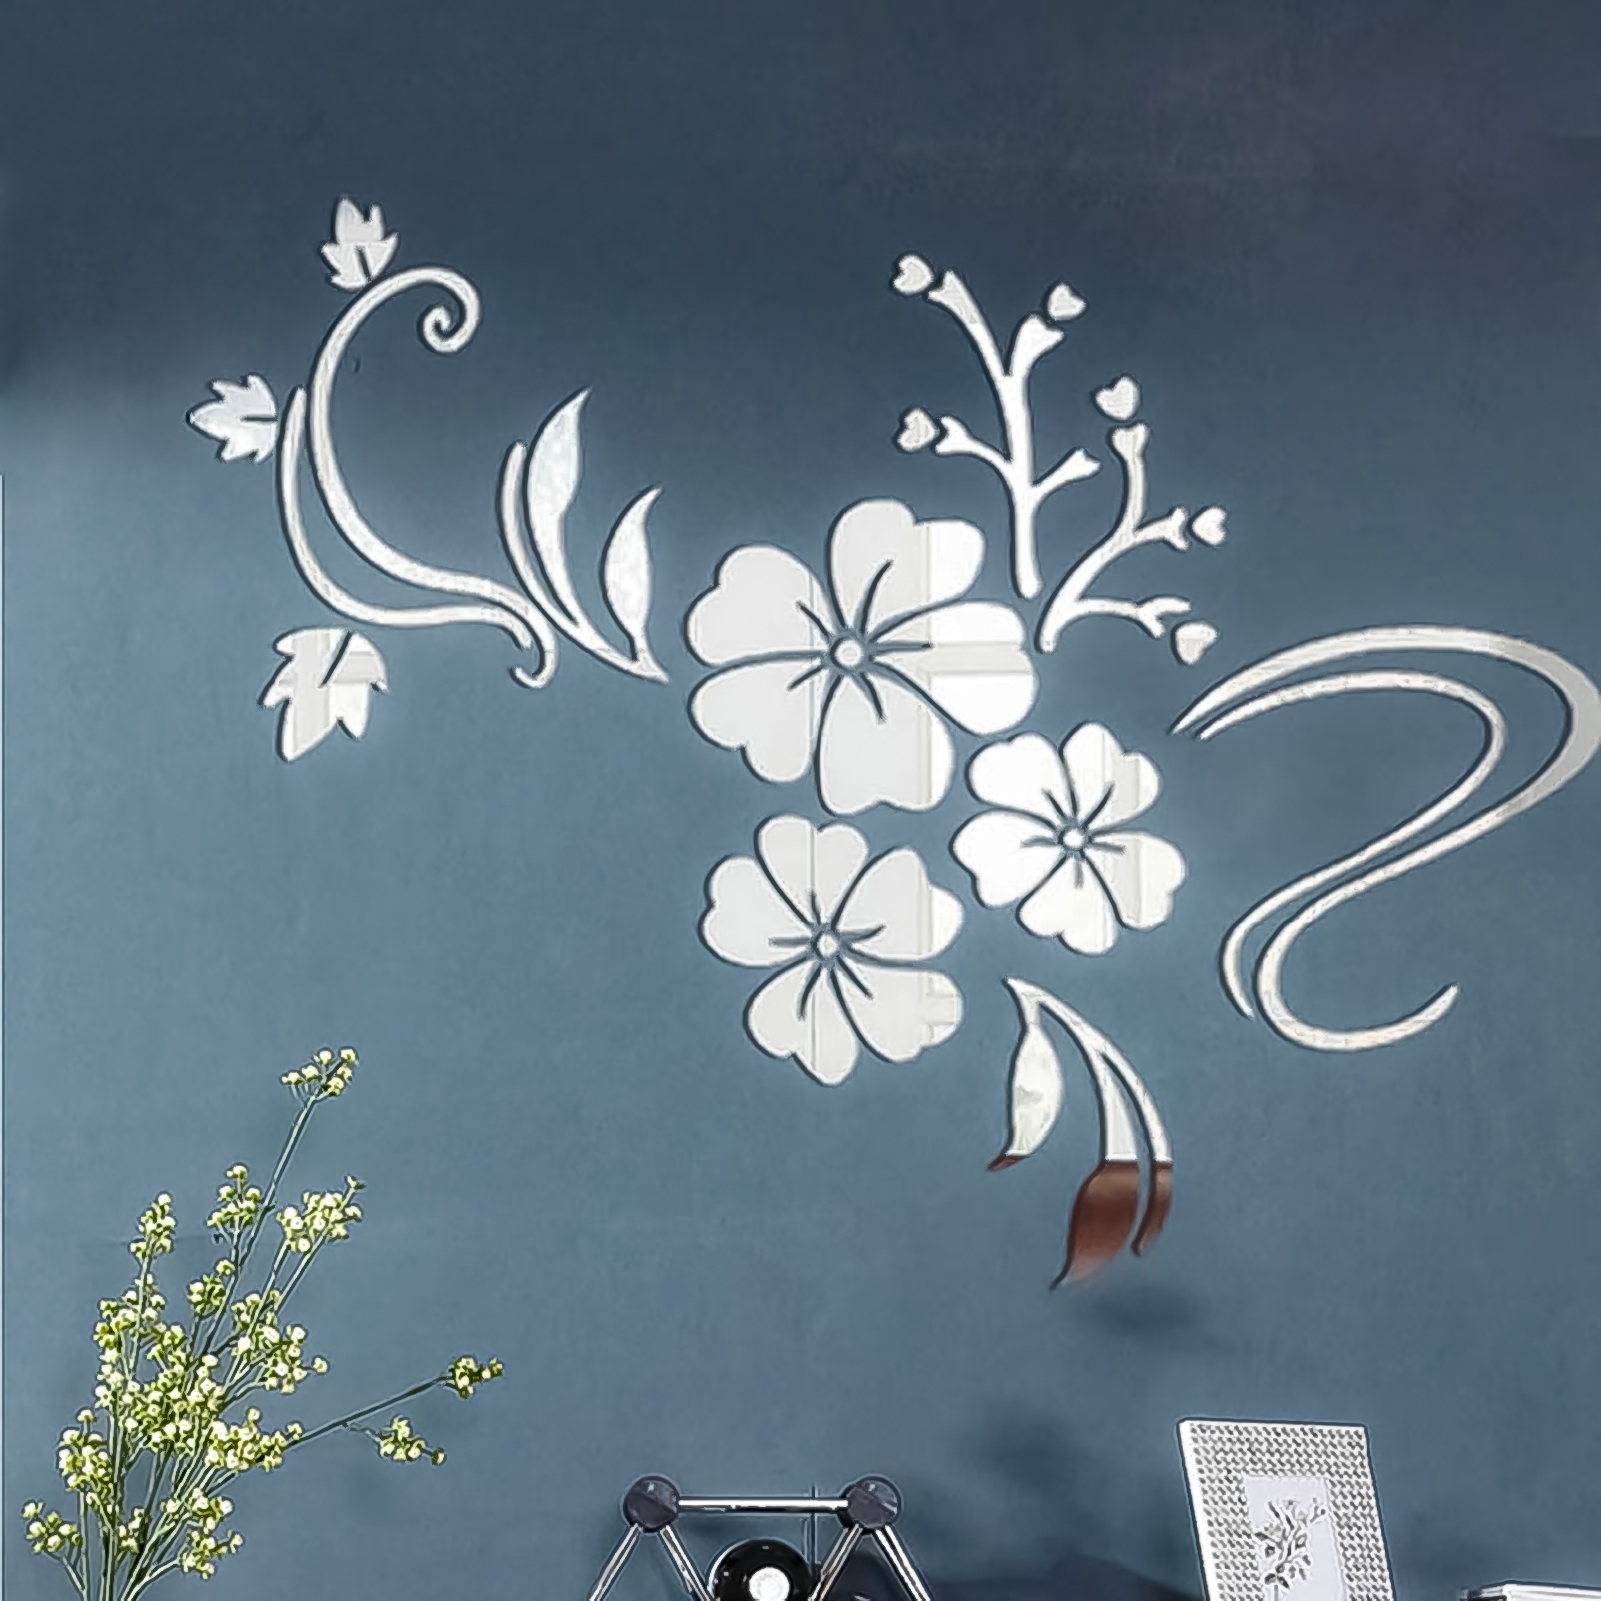 Цветочный орнамент на стене